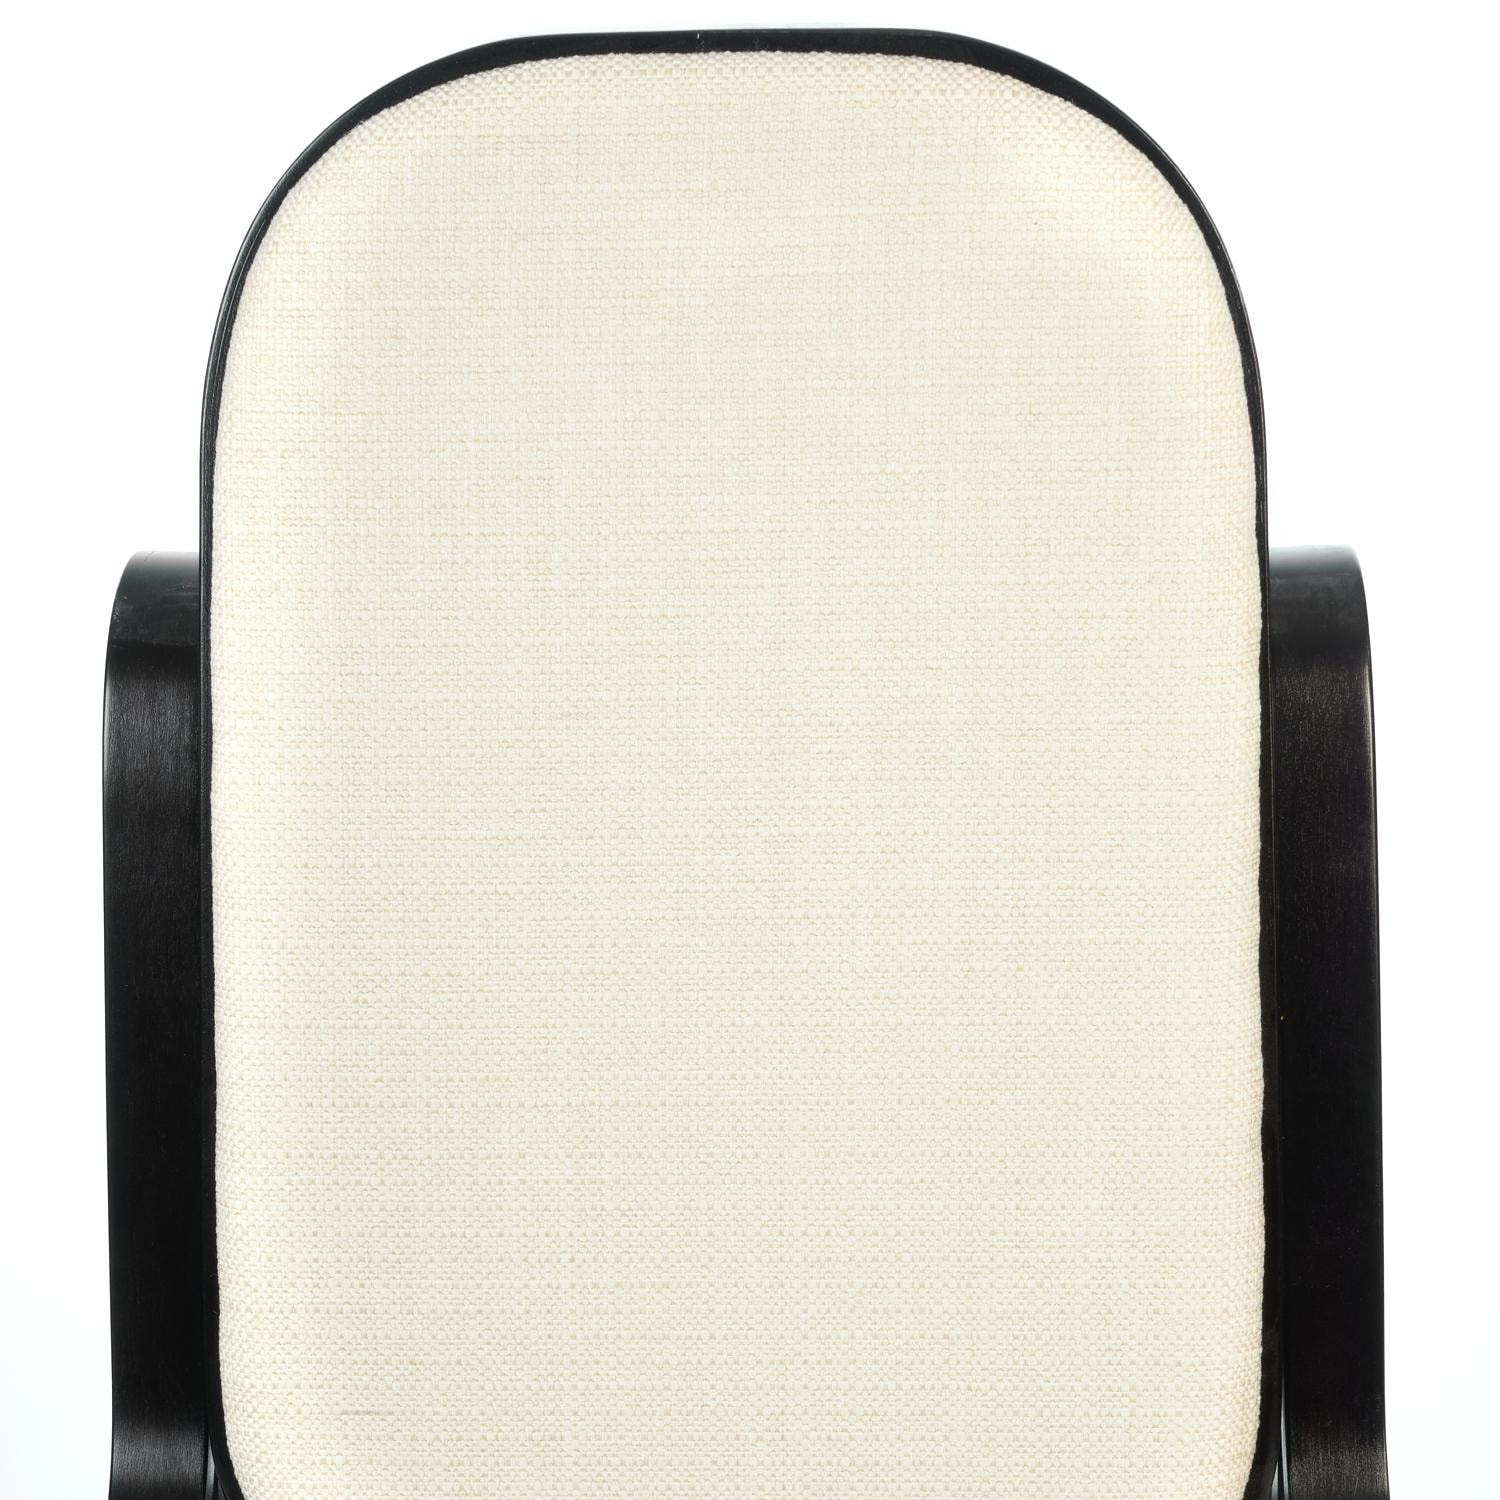 Кресло-качалка ТС 55х98х91 см ткань венге, цвет тёмно-коричневый - фото 5